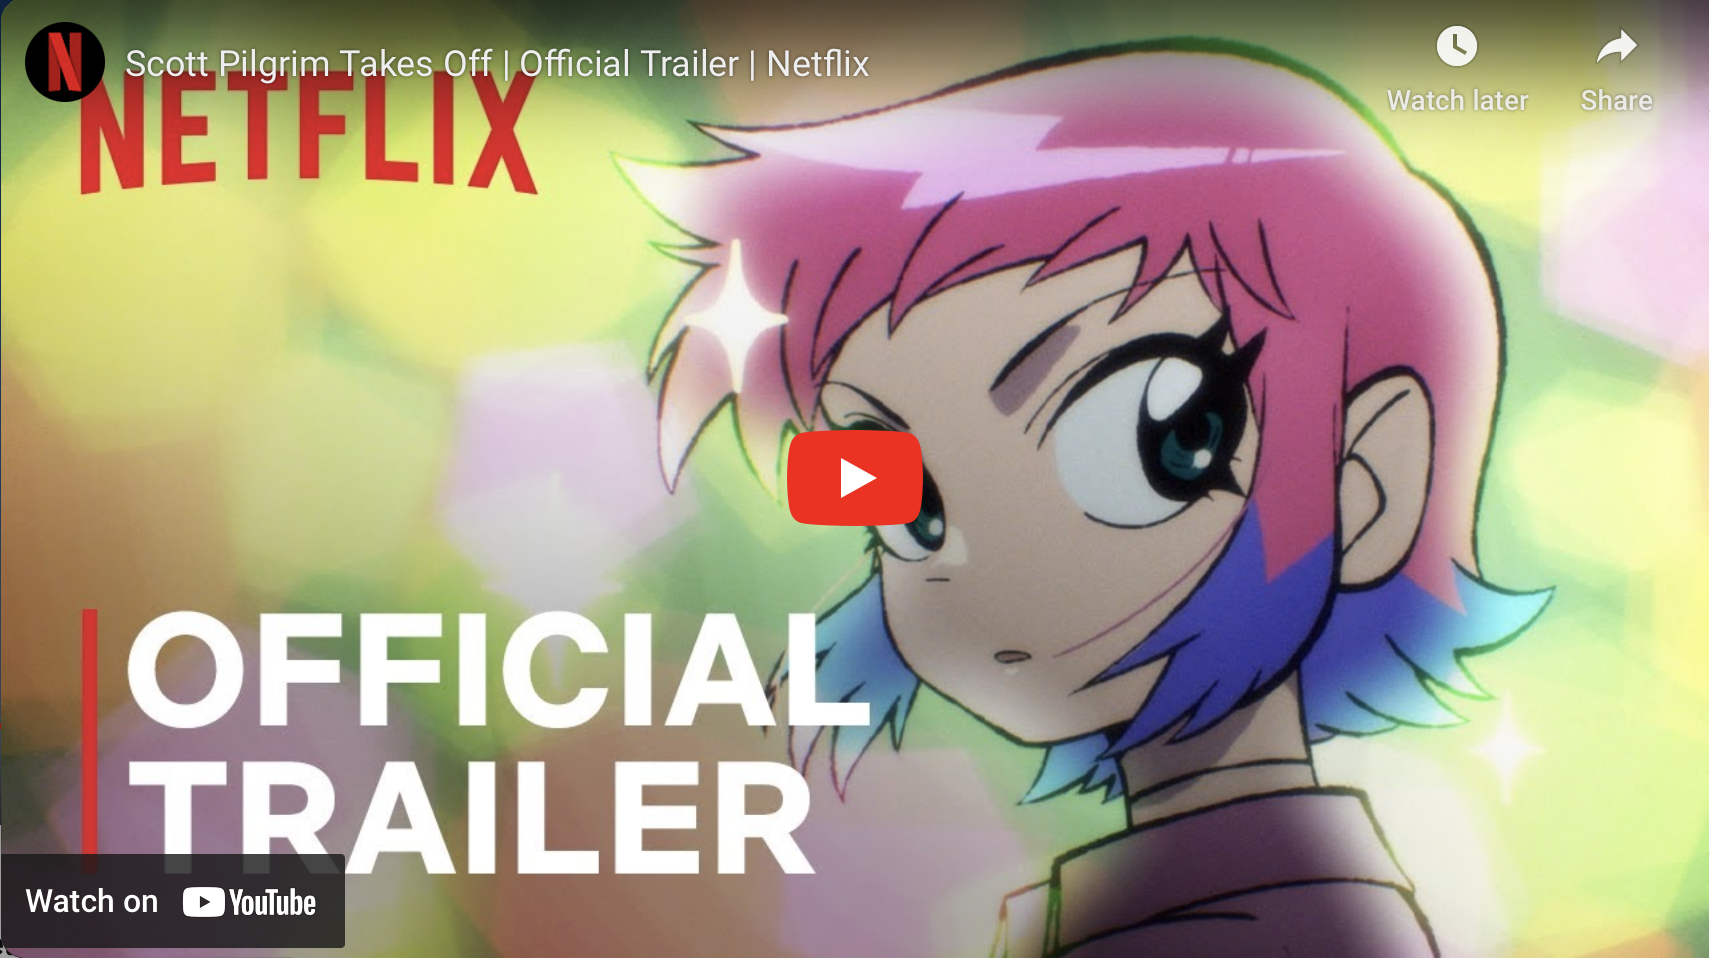 Netflix Drops New Bloody Trailer for CYBERPUNK: EDGERUNNERS Anime